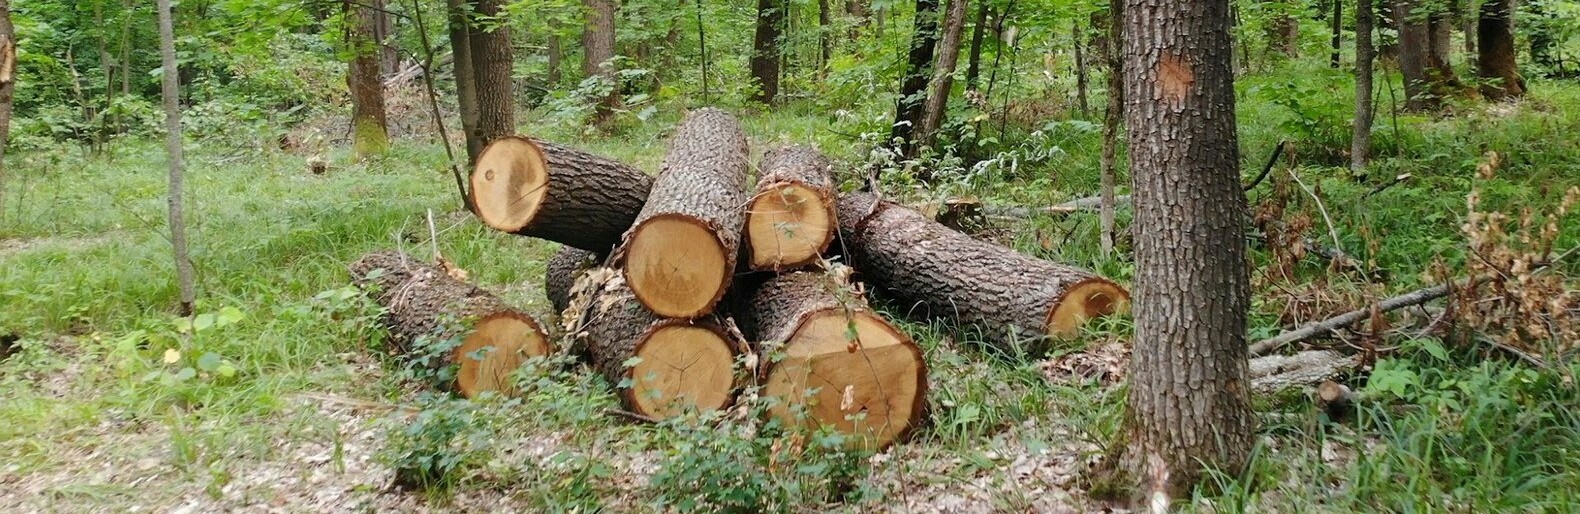 Лісник з Чернігівської області замість захисту дерев, торгував ними